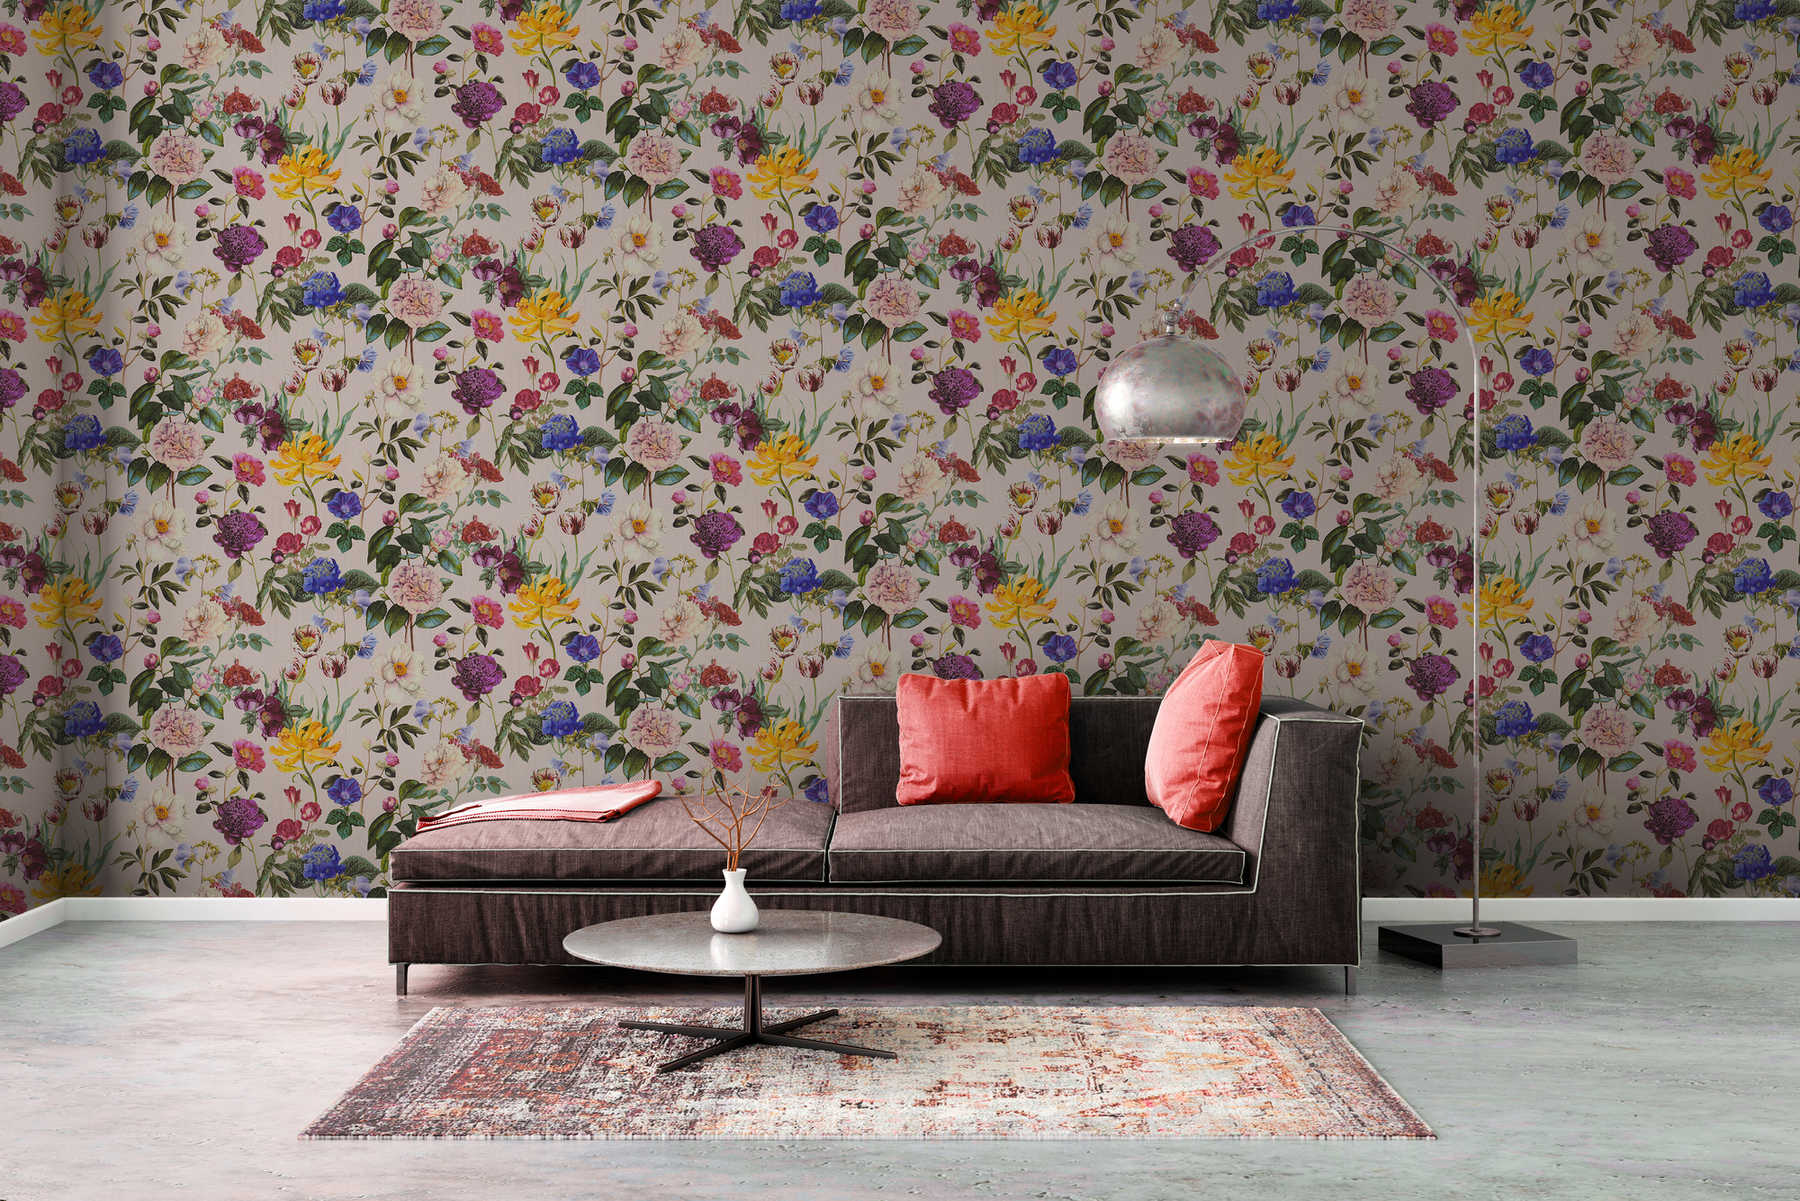             Blüten-Tapete mit Blumen in leuchtenden Farben – Bunt, Grün, Rosa
        